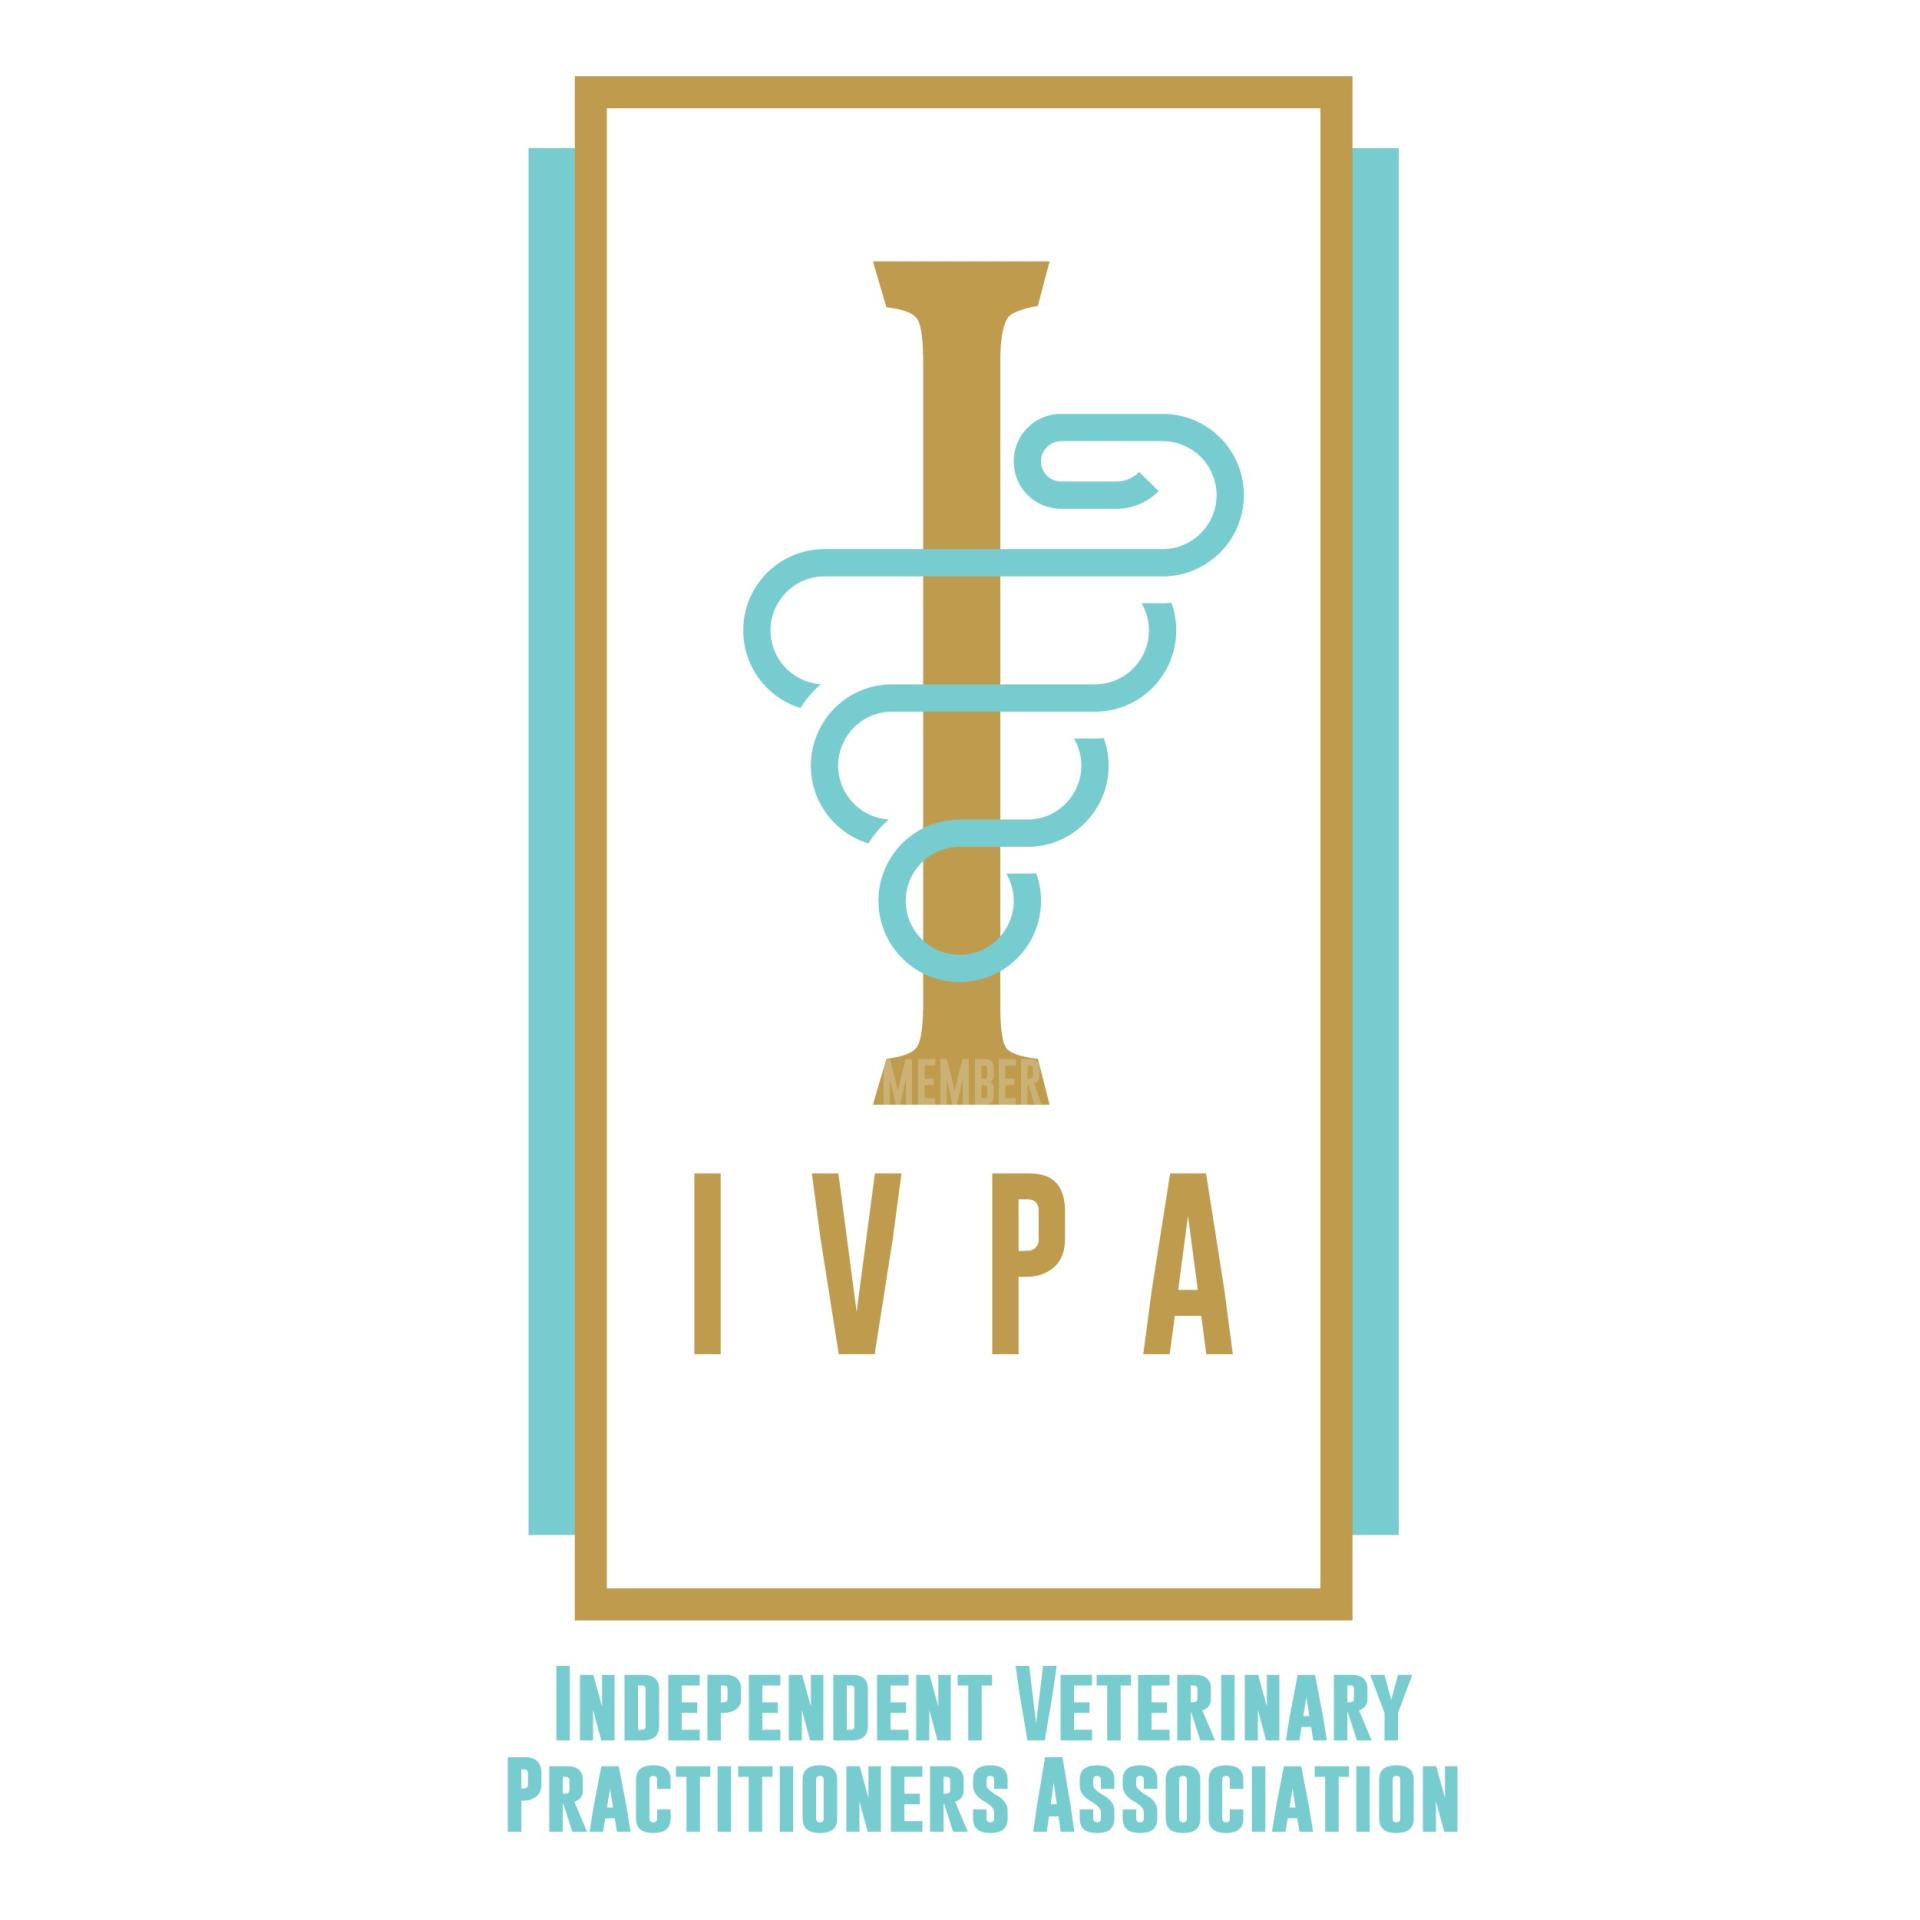 IVPA Practice Ithaca New York